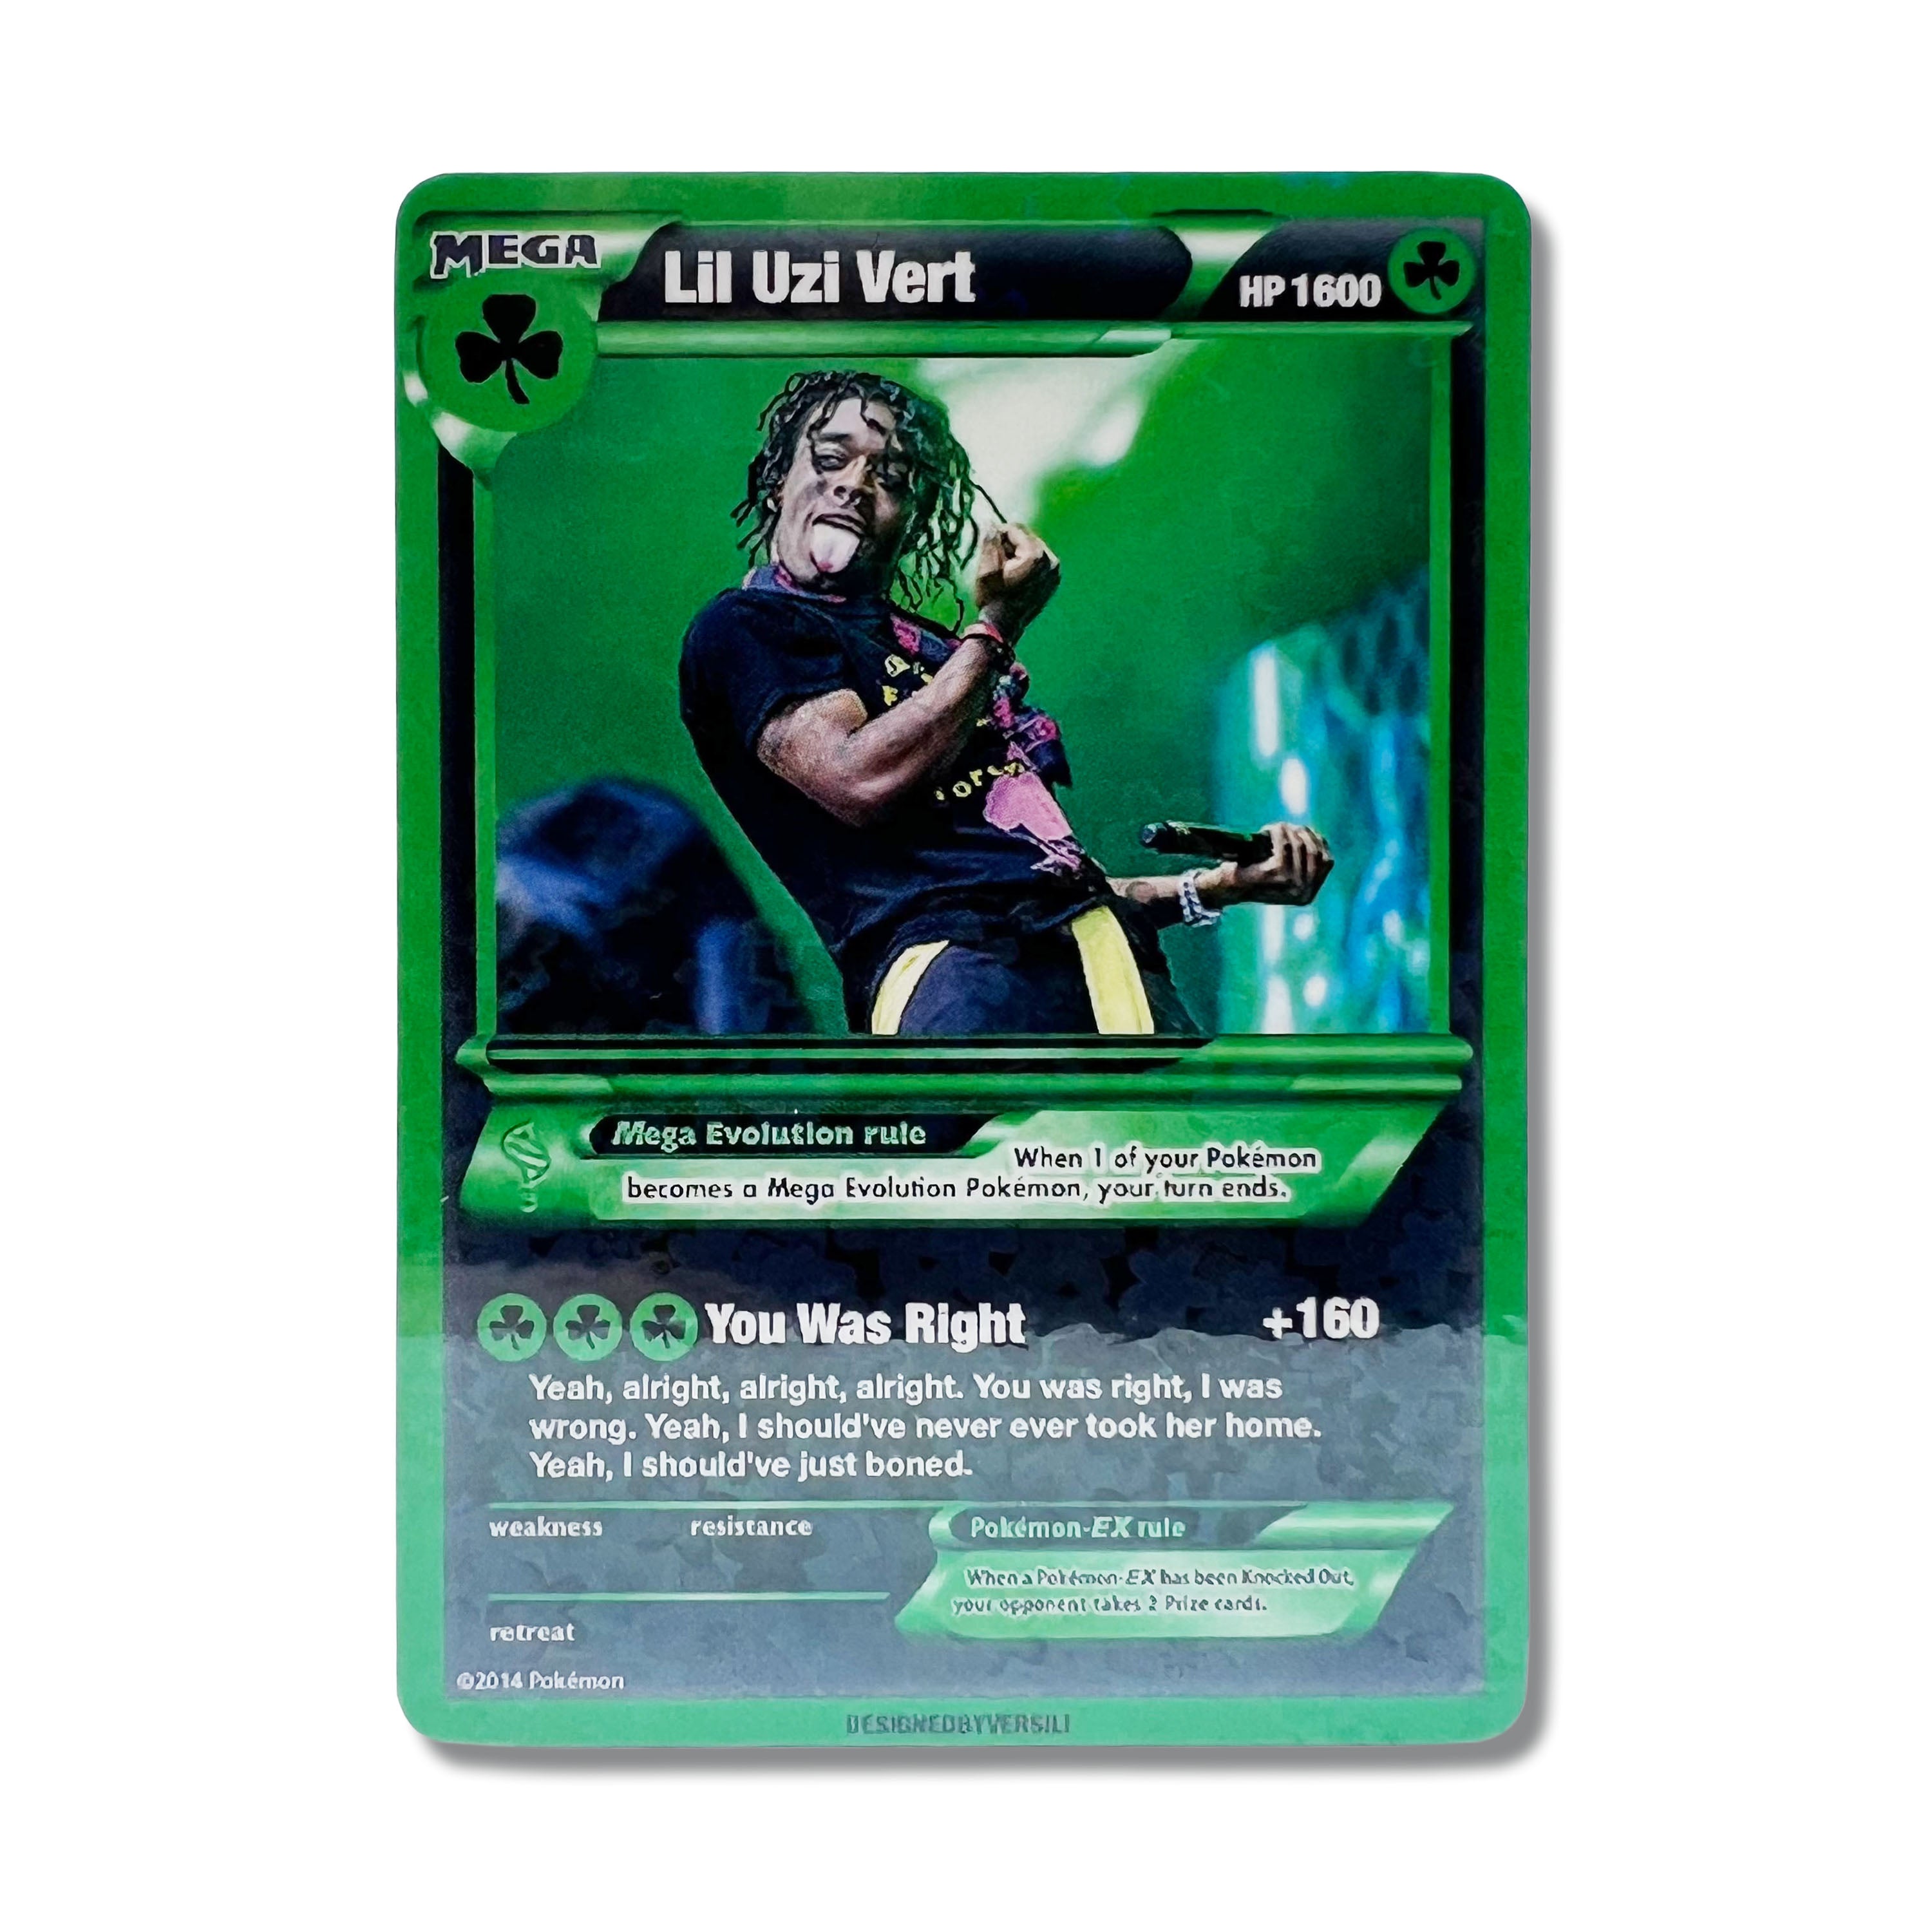 Lil Uzi Vert Pokémon Card (St. Patrick’s Day)